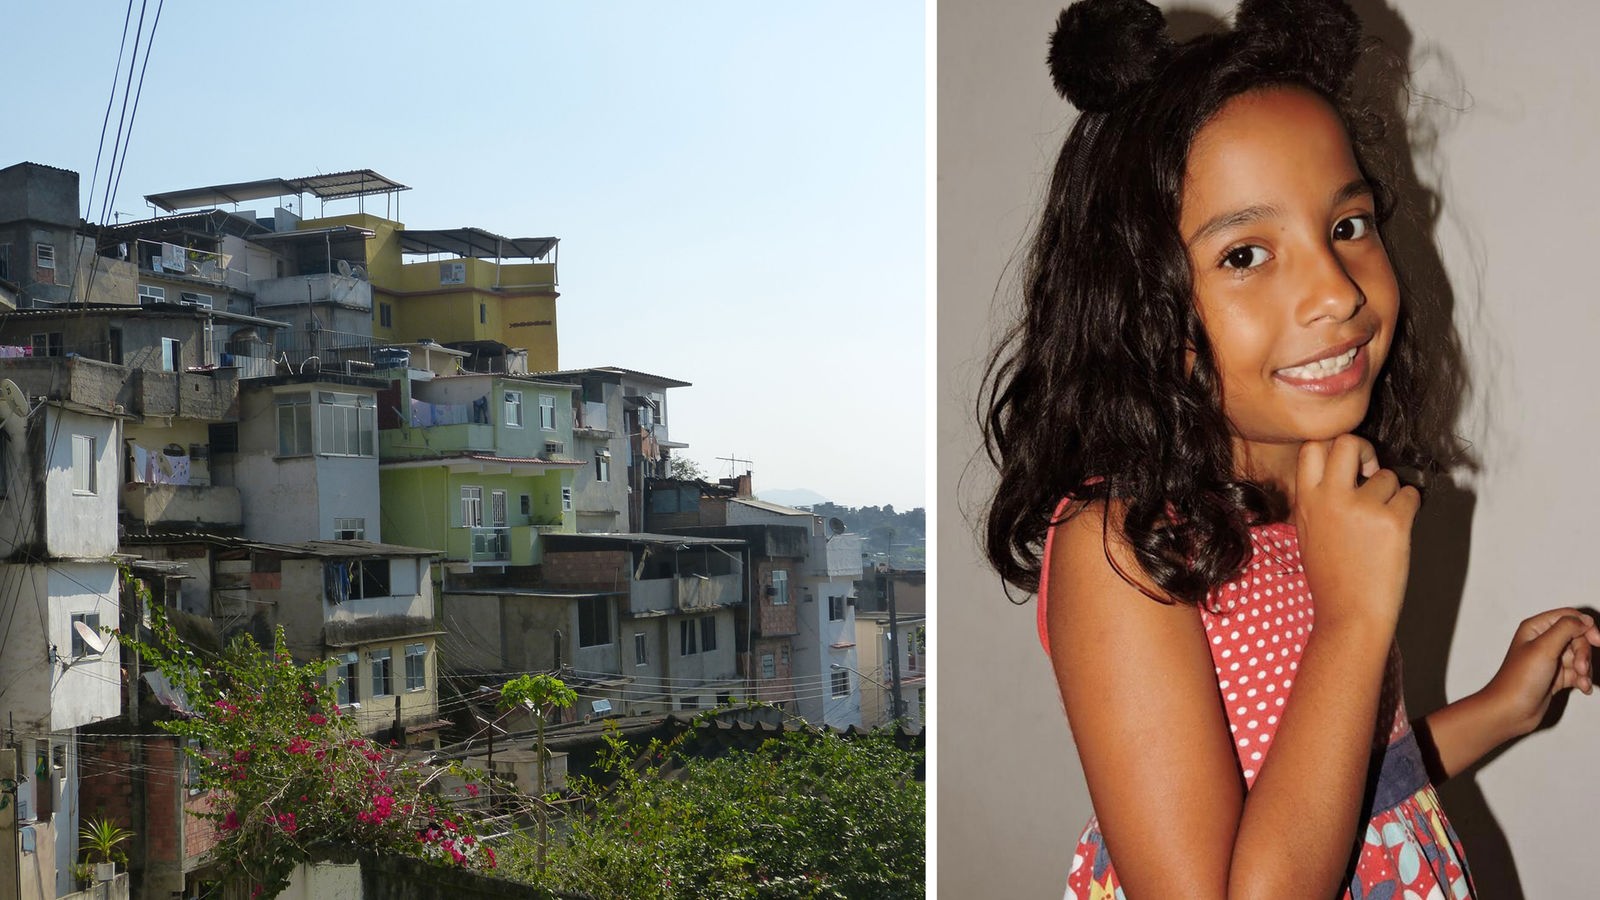 Sophia wohnt in einem Armenviertel in Rio de Janeiro